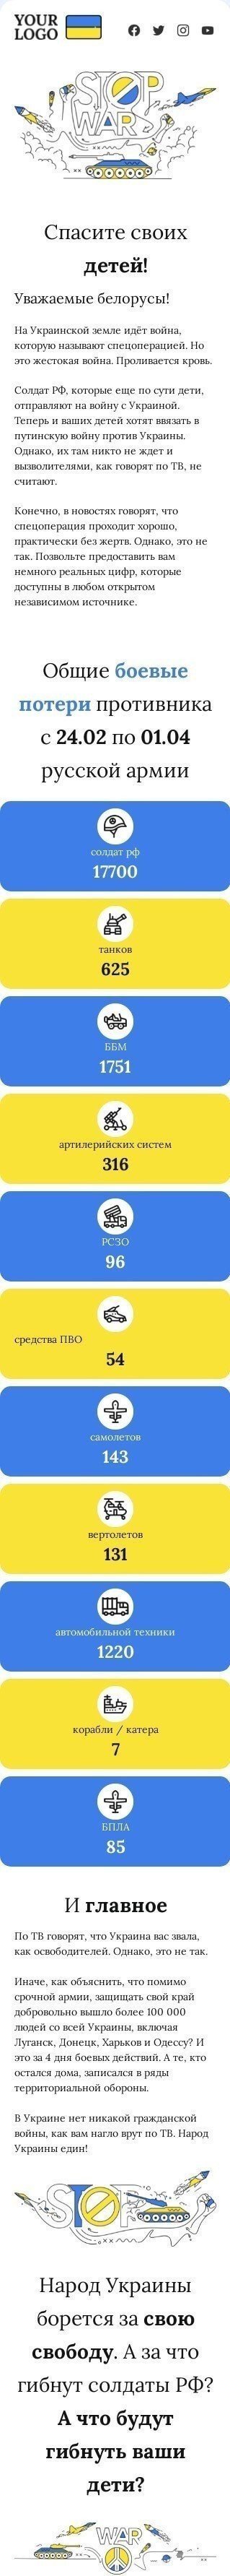 HTML-шаблон «Спасите белорусских детей» мобильный вид